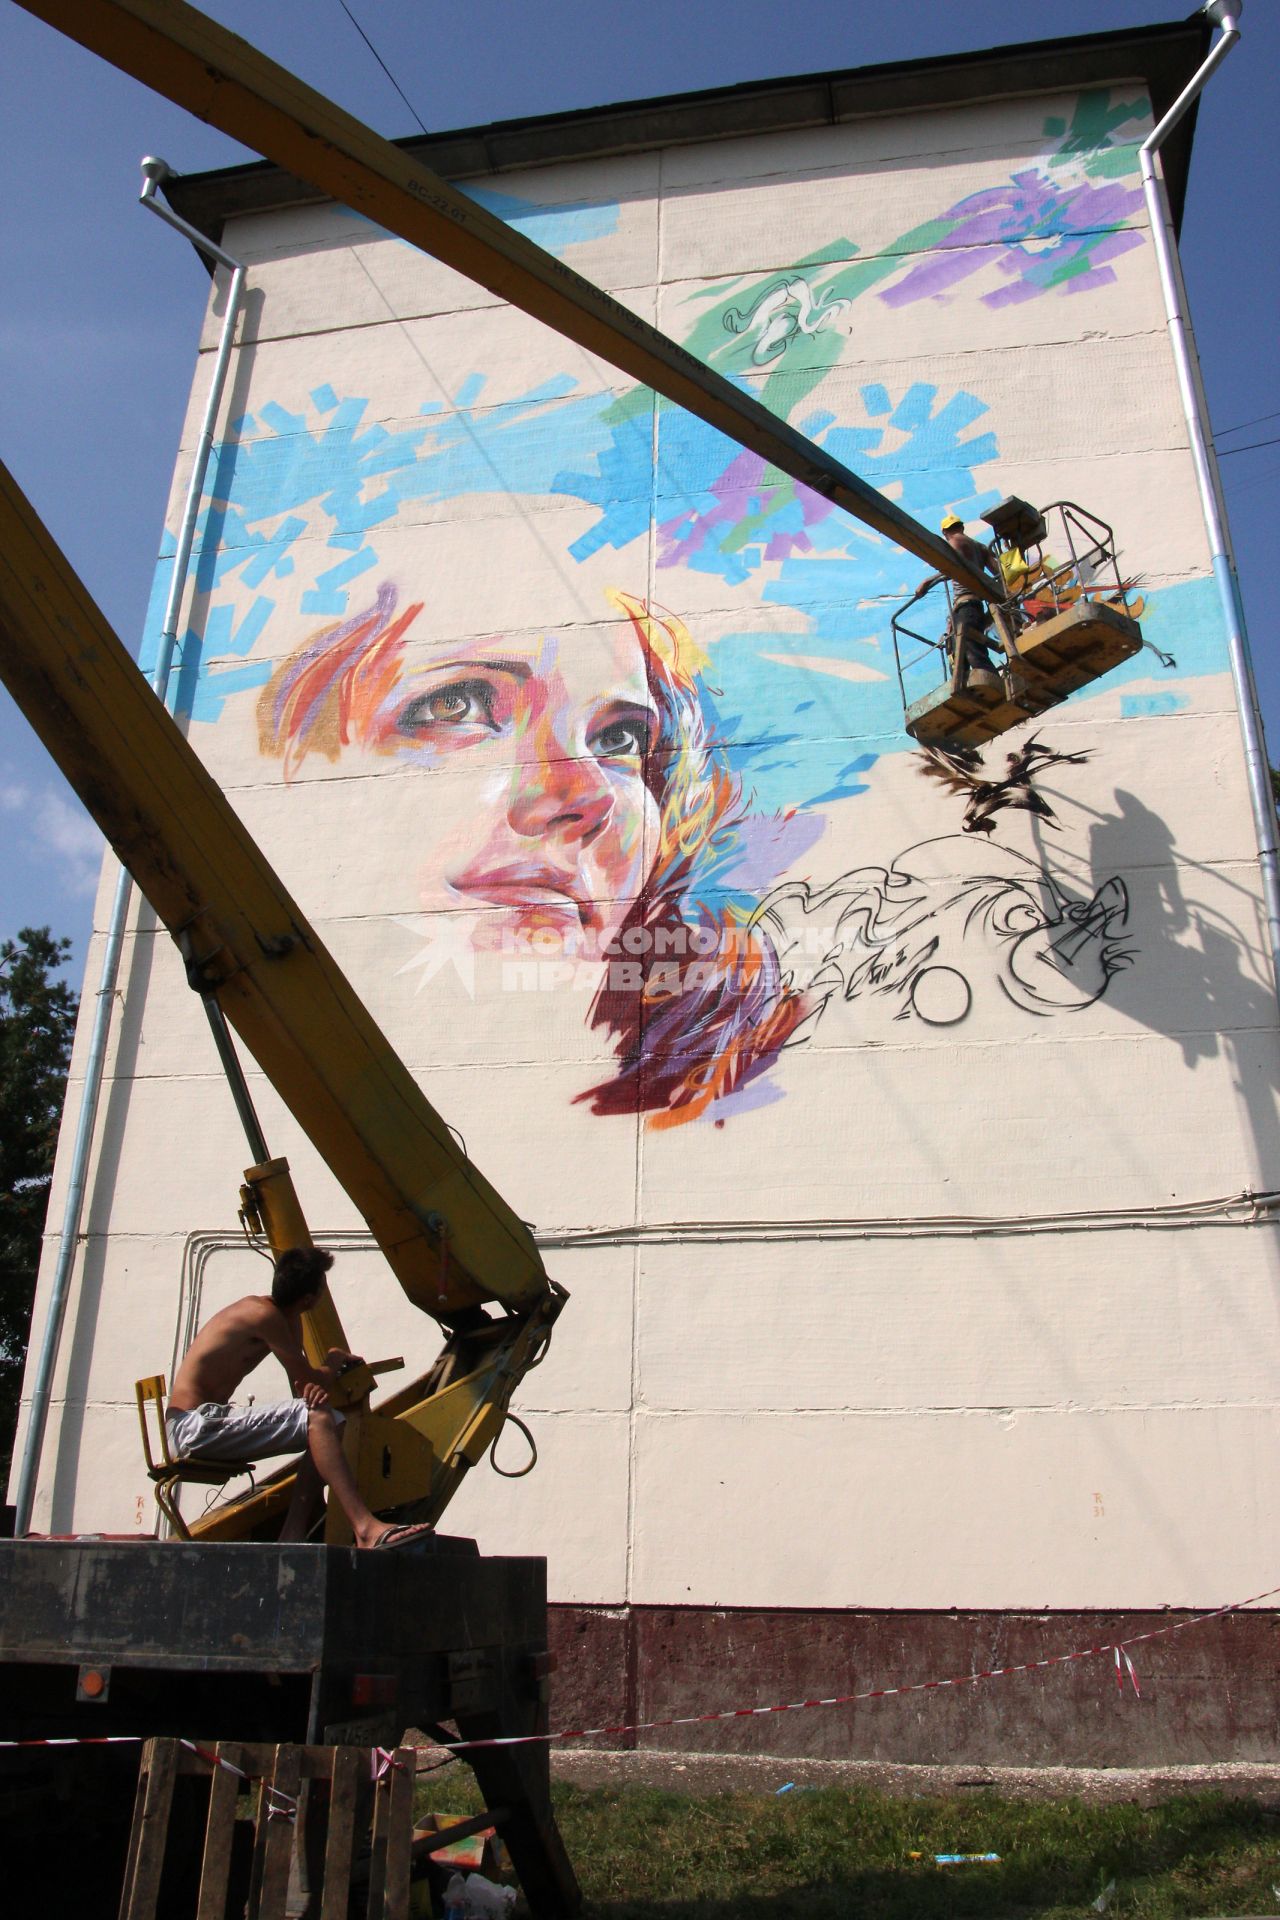 Международный фестиваль граффити в Казани посетили художники из Испании, Германии и Польши. На снимке: художник на подъемнике оформляет стену многоквартирного дома.